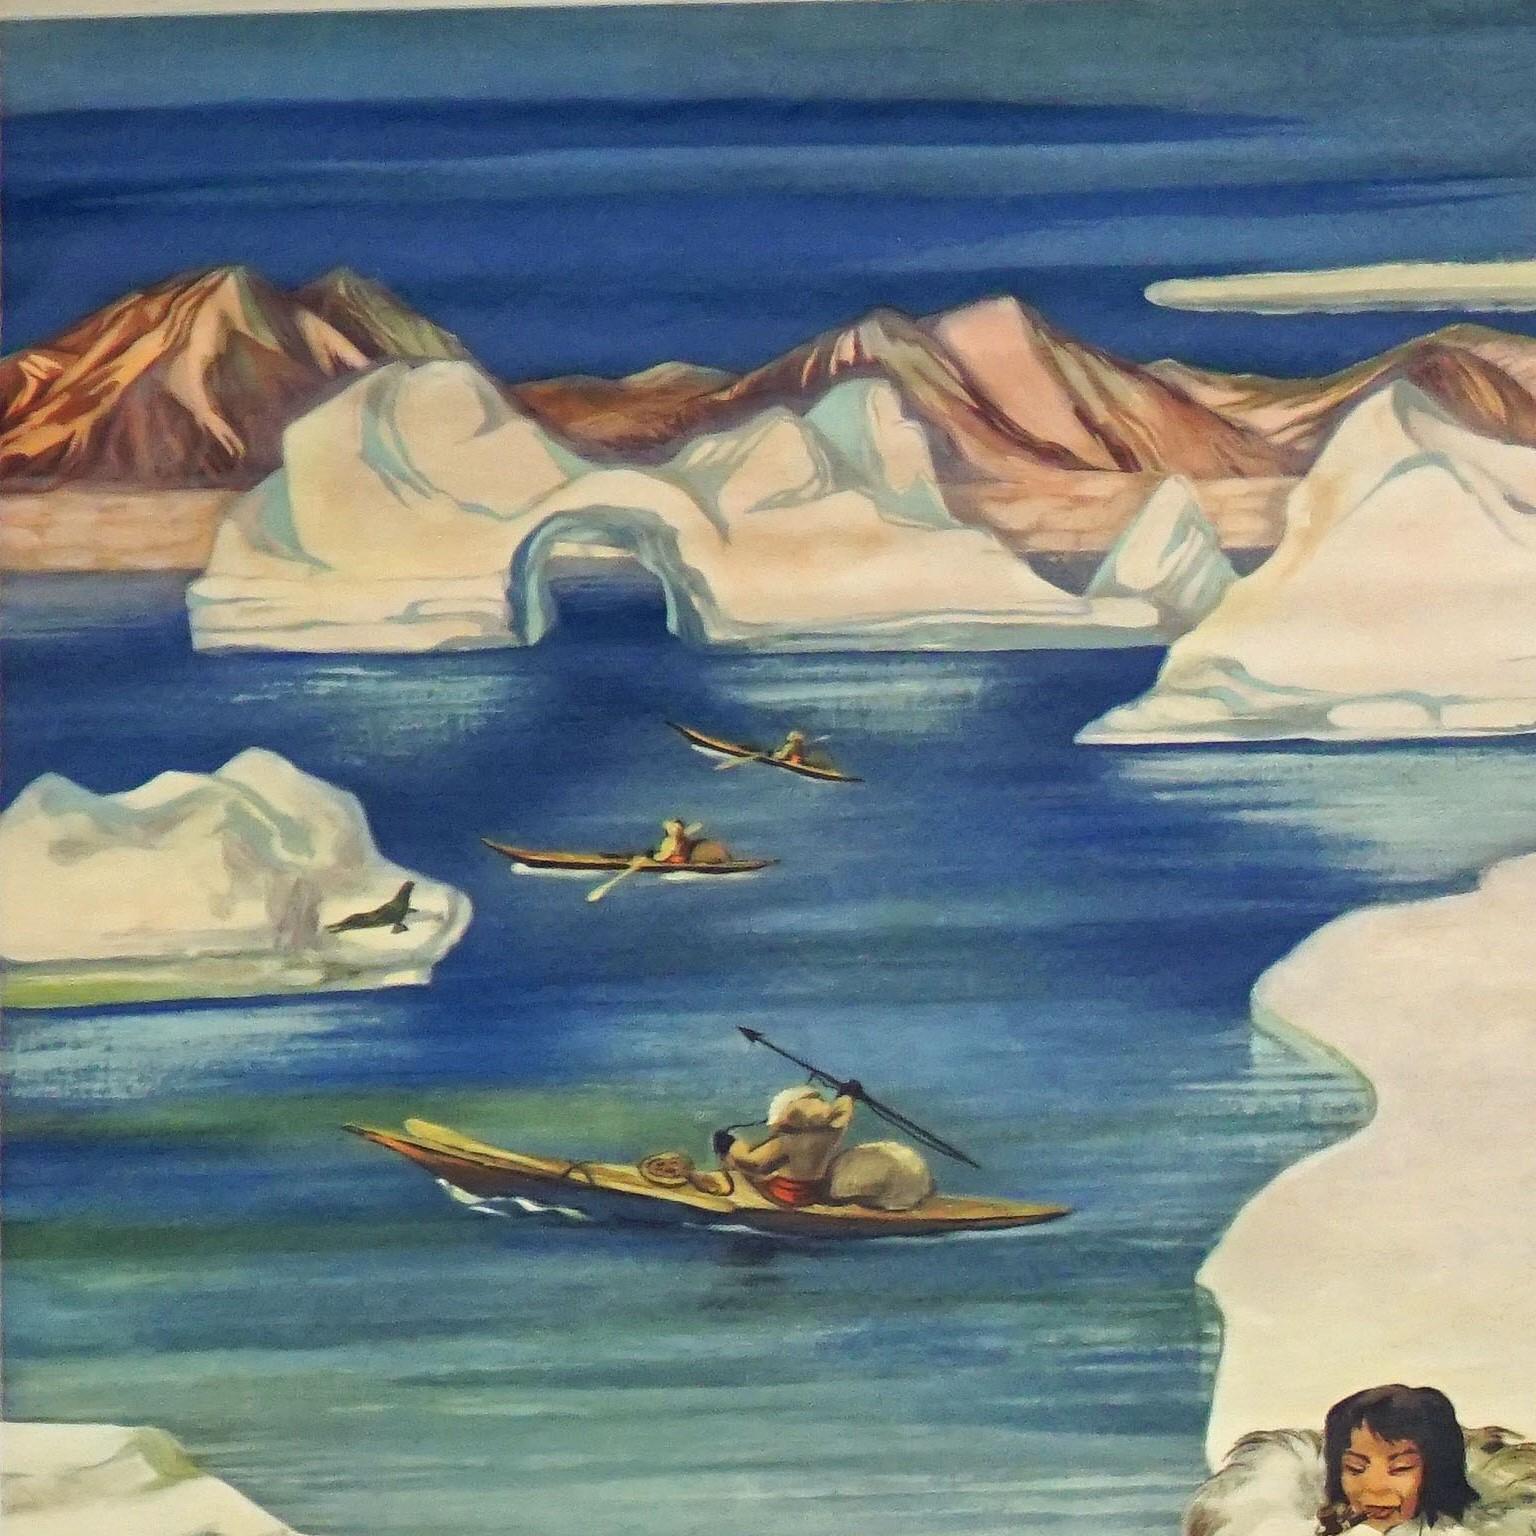 Cette planche murale vintage à rabat illustre la vie des Inuits dans la région polaire avec une vue intérieure d'un igloo, des traîneaux à chiens, de la pêche en bateau (umiak) et de la pêche sur glace. L'artiste est Groening Jun., publié par Dr. te